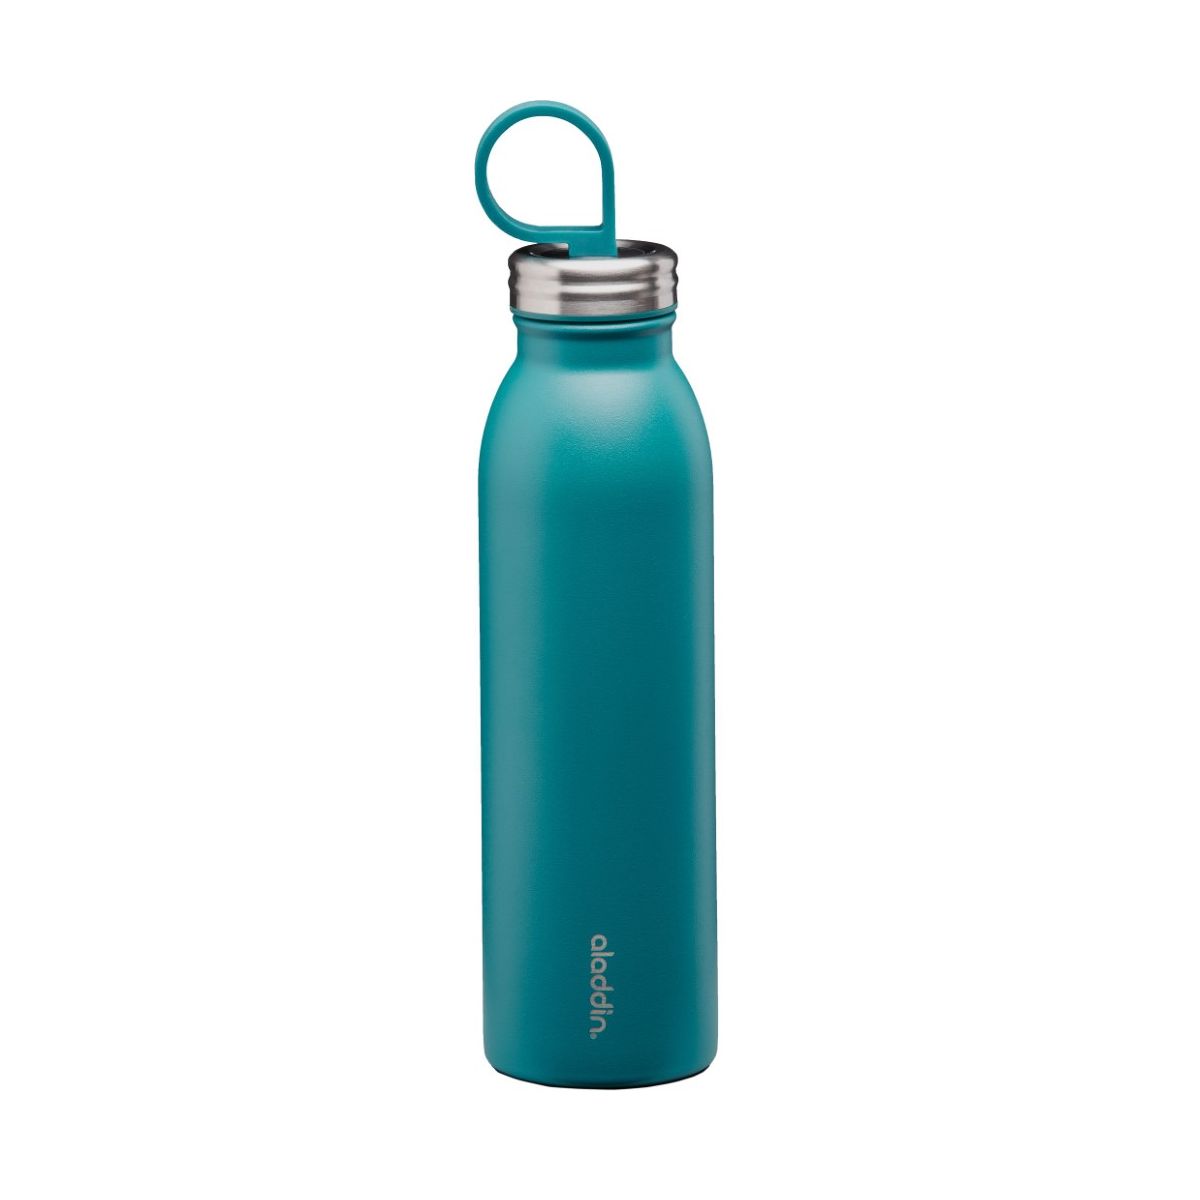 زجاجة ماء ثيرموفاك مبردة من علاء الدين - ٠.٥٥ لتر أزرق مائي